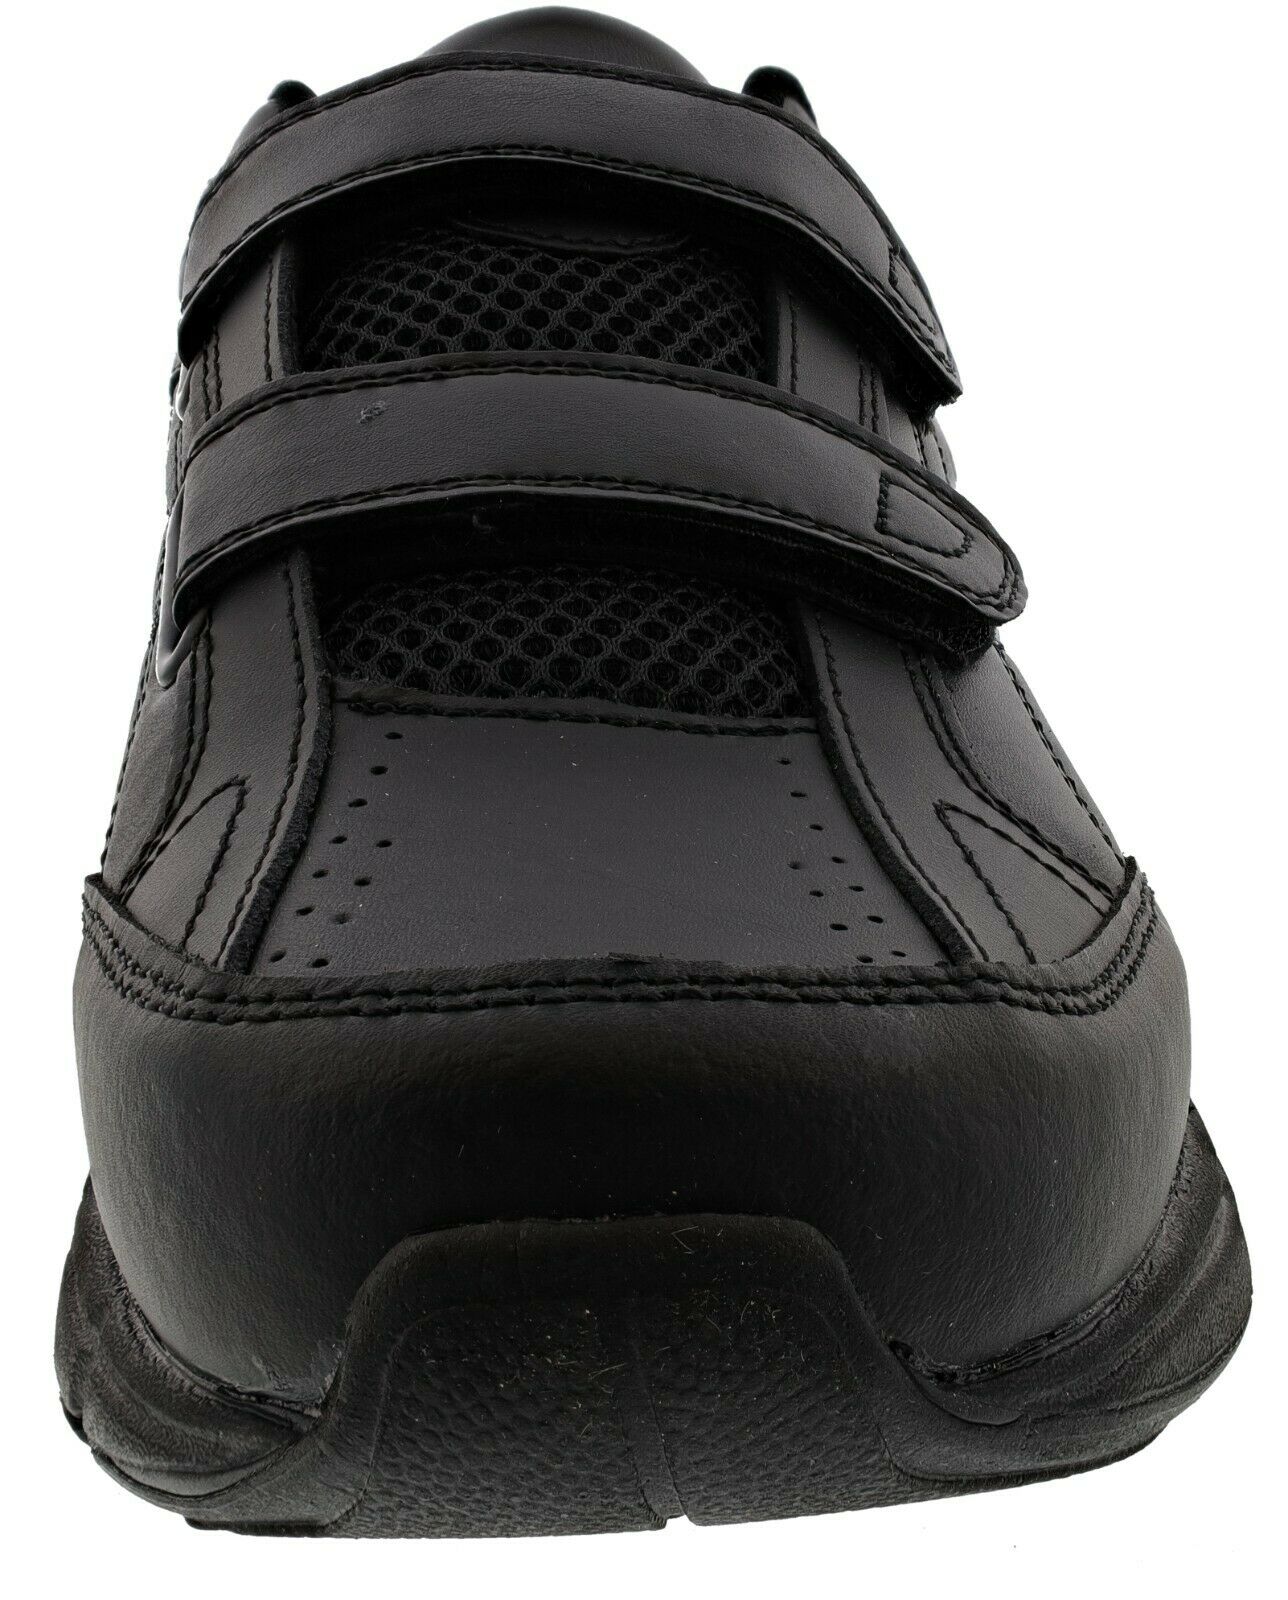 Dr. Scholl's Men's Brisk Sneakers, Wide Width - image 3 of 6